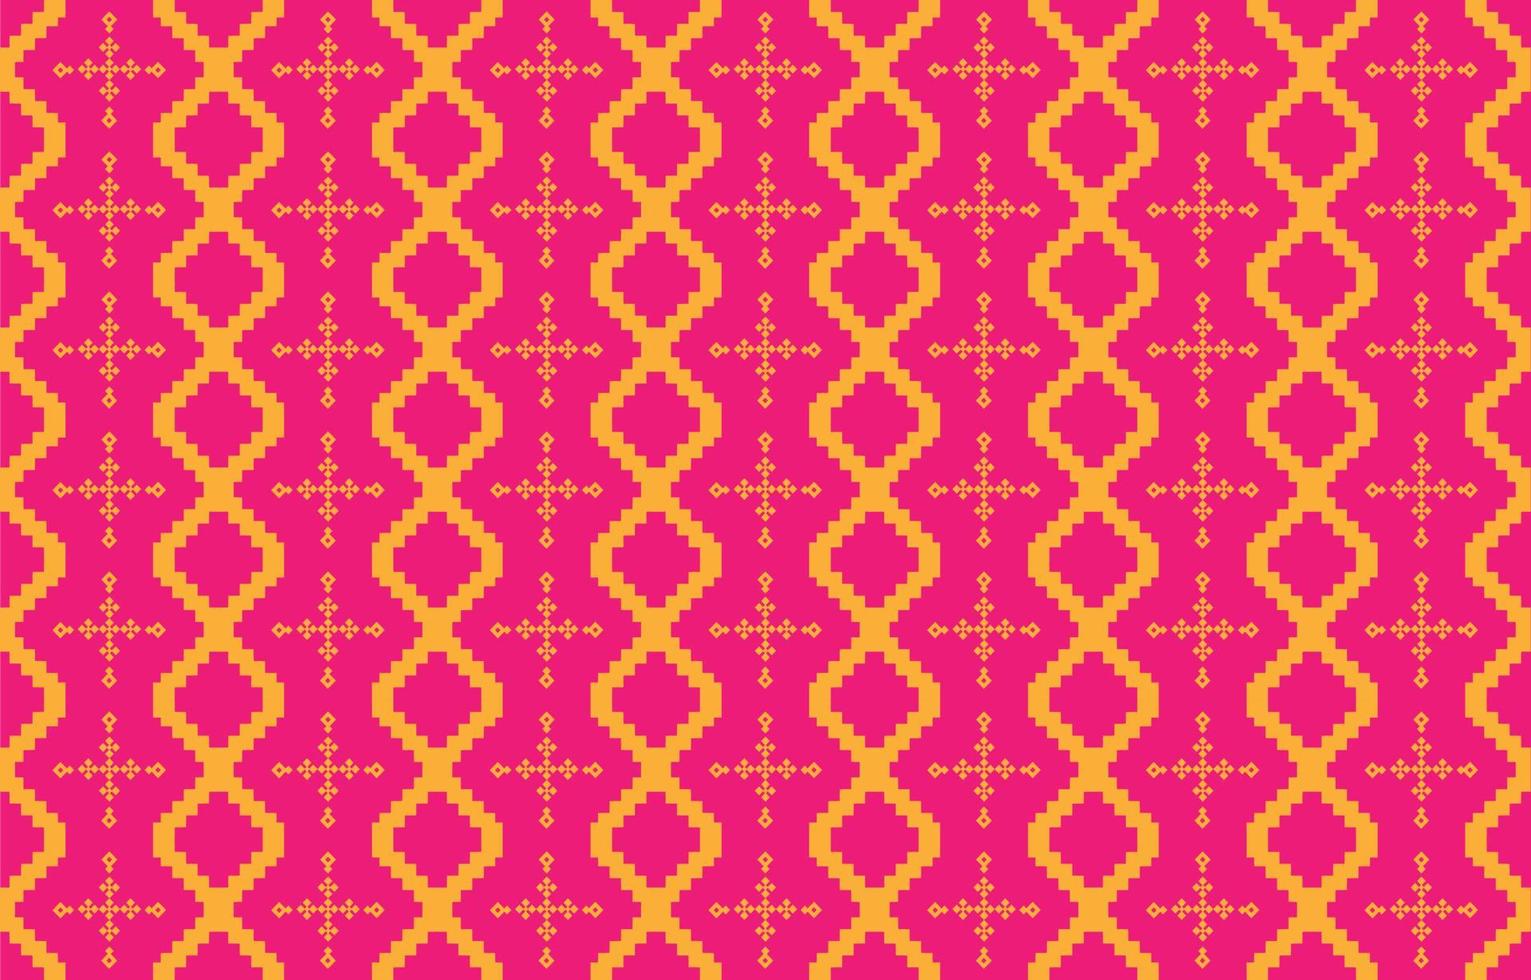 abstrakte geometrische und tribale Muster, Gebrauchsdesign lokale Stoffmuster, von indigenen Stämmen inspiriertes Design. geometrische Vektorillustration vektor